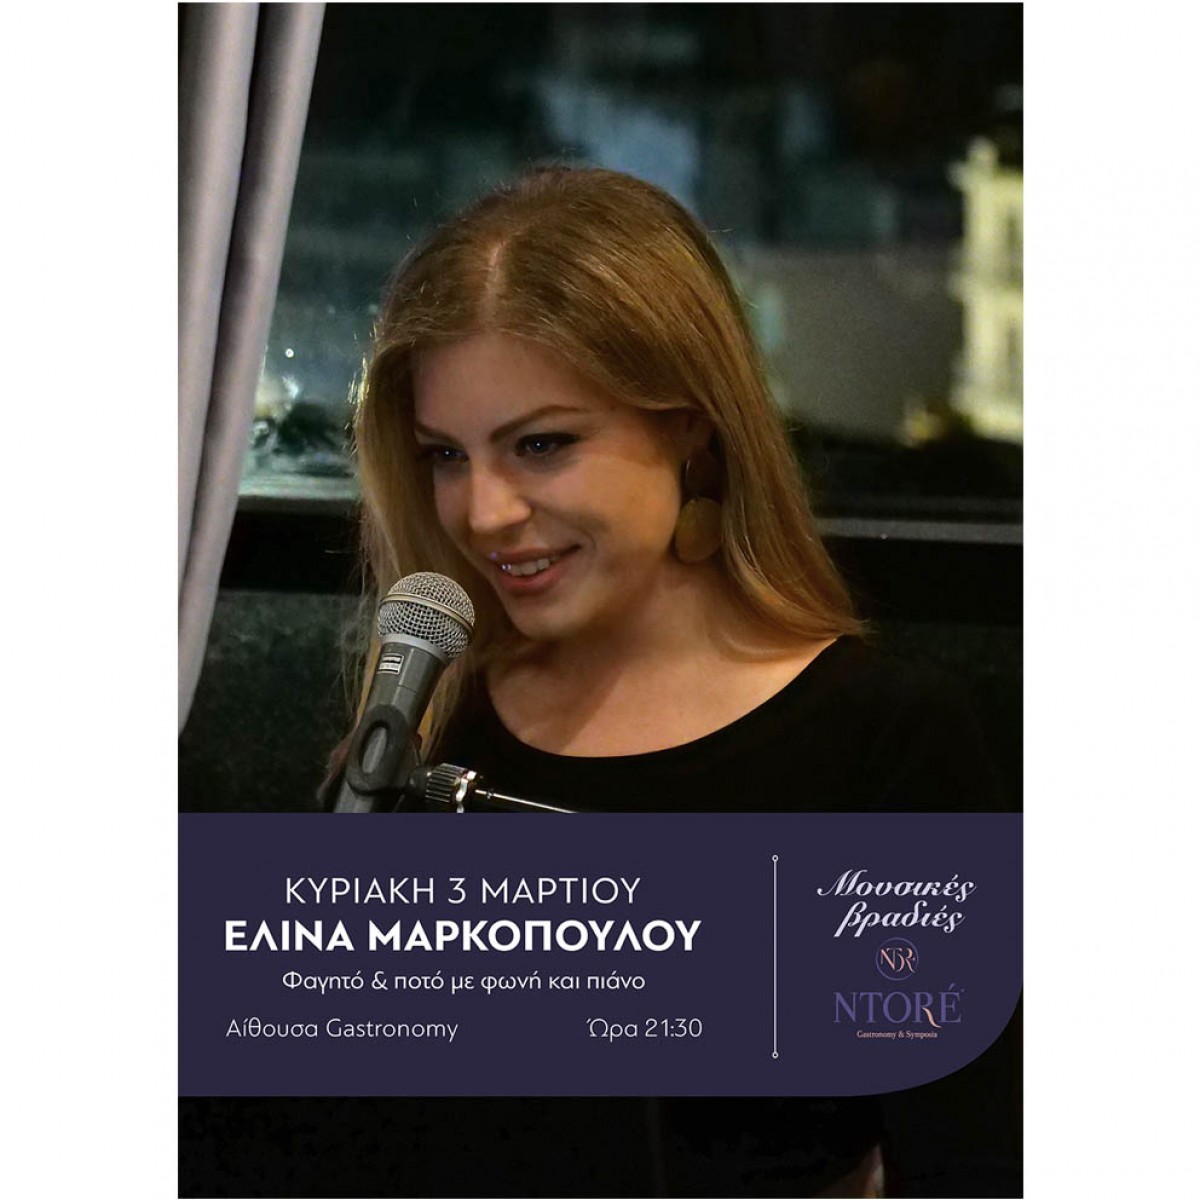 Φαγητό και ποτό με την Ελίνα Μαρκοπούλου στη φωνή και το πιάνο, Κυριακή 3 Μαρτίου, 21:30